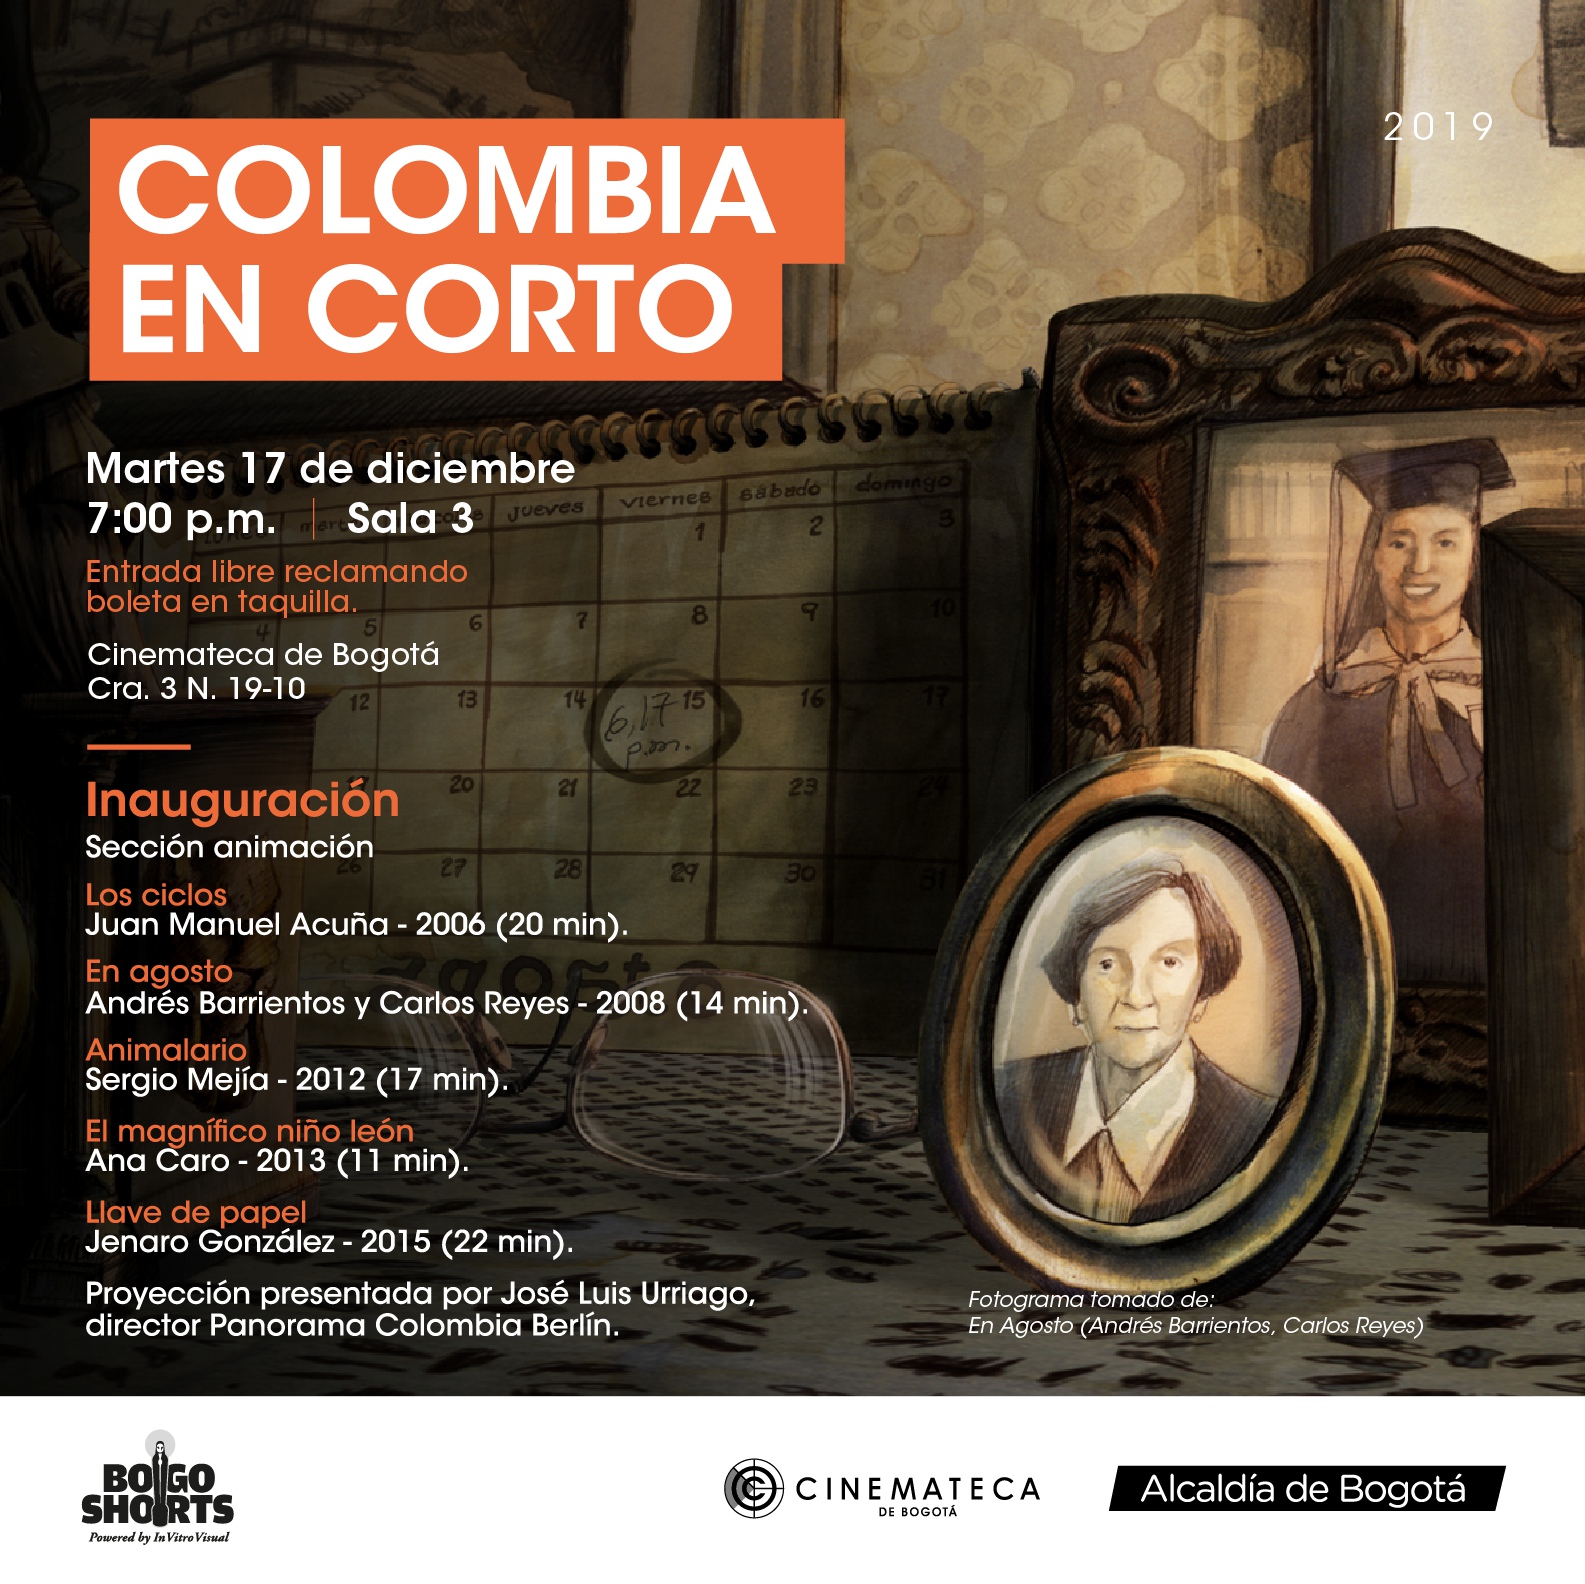 Colombia en corto en la Cinemateca de Bogotá